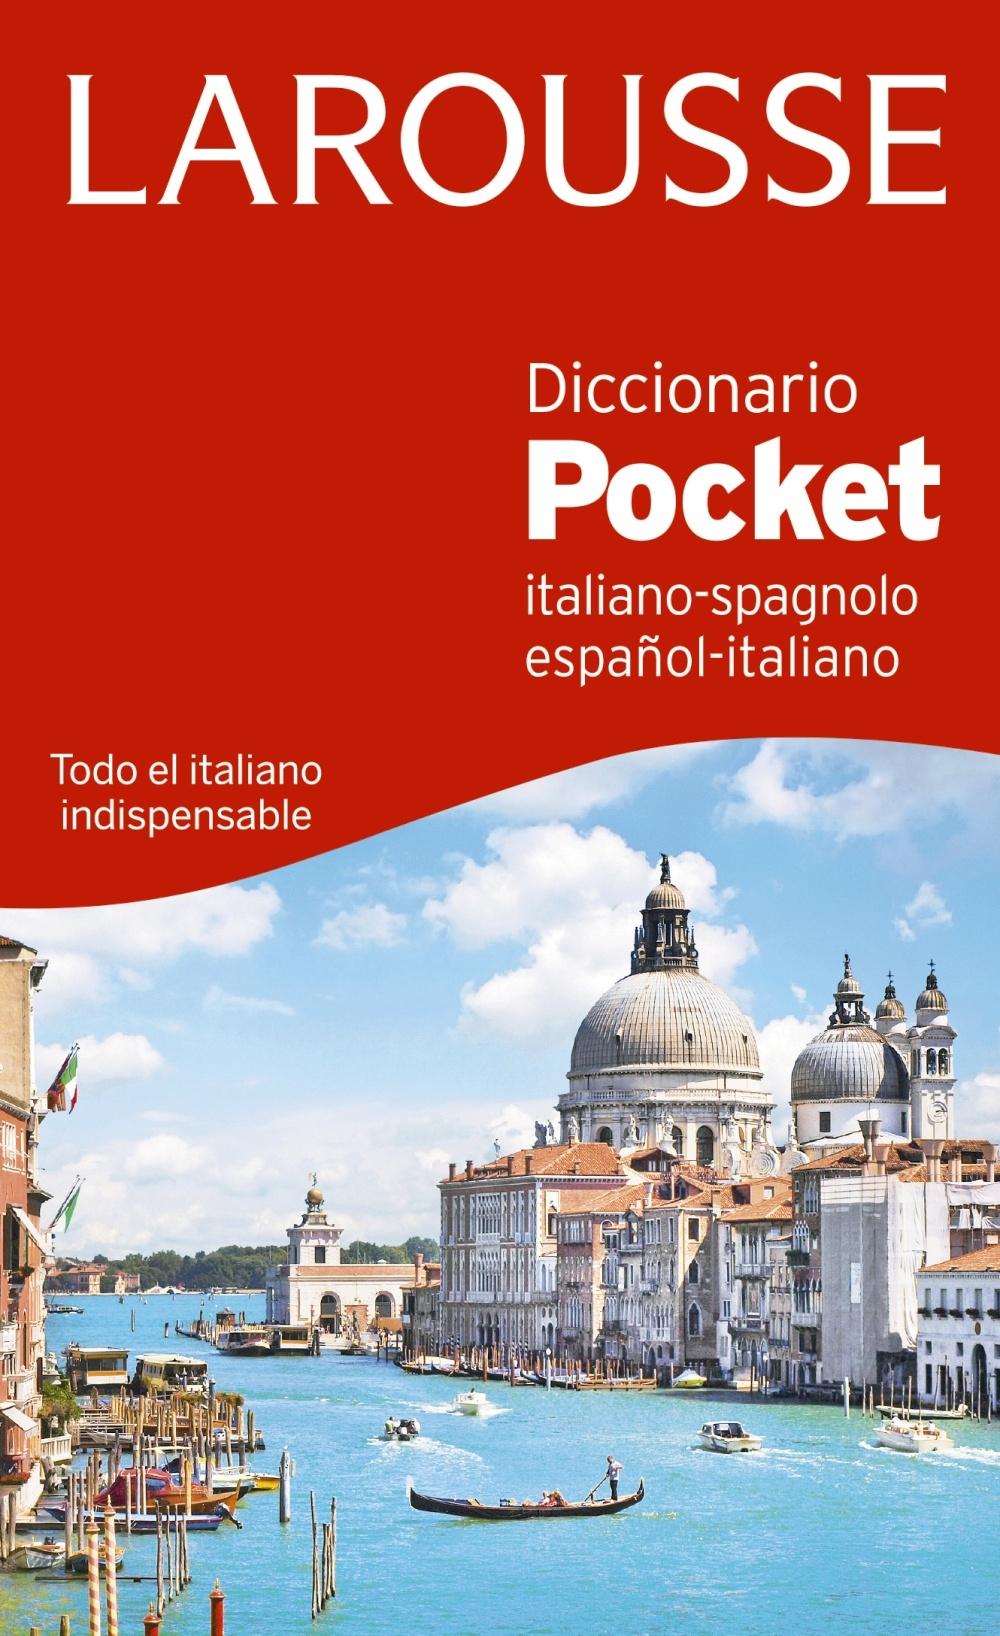 Diccionario Pocket Español-Italiano / Italiano-Spagnolo. 